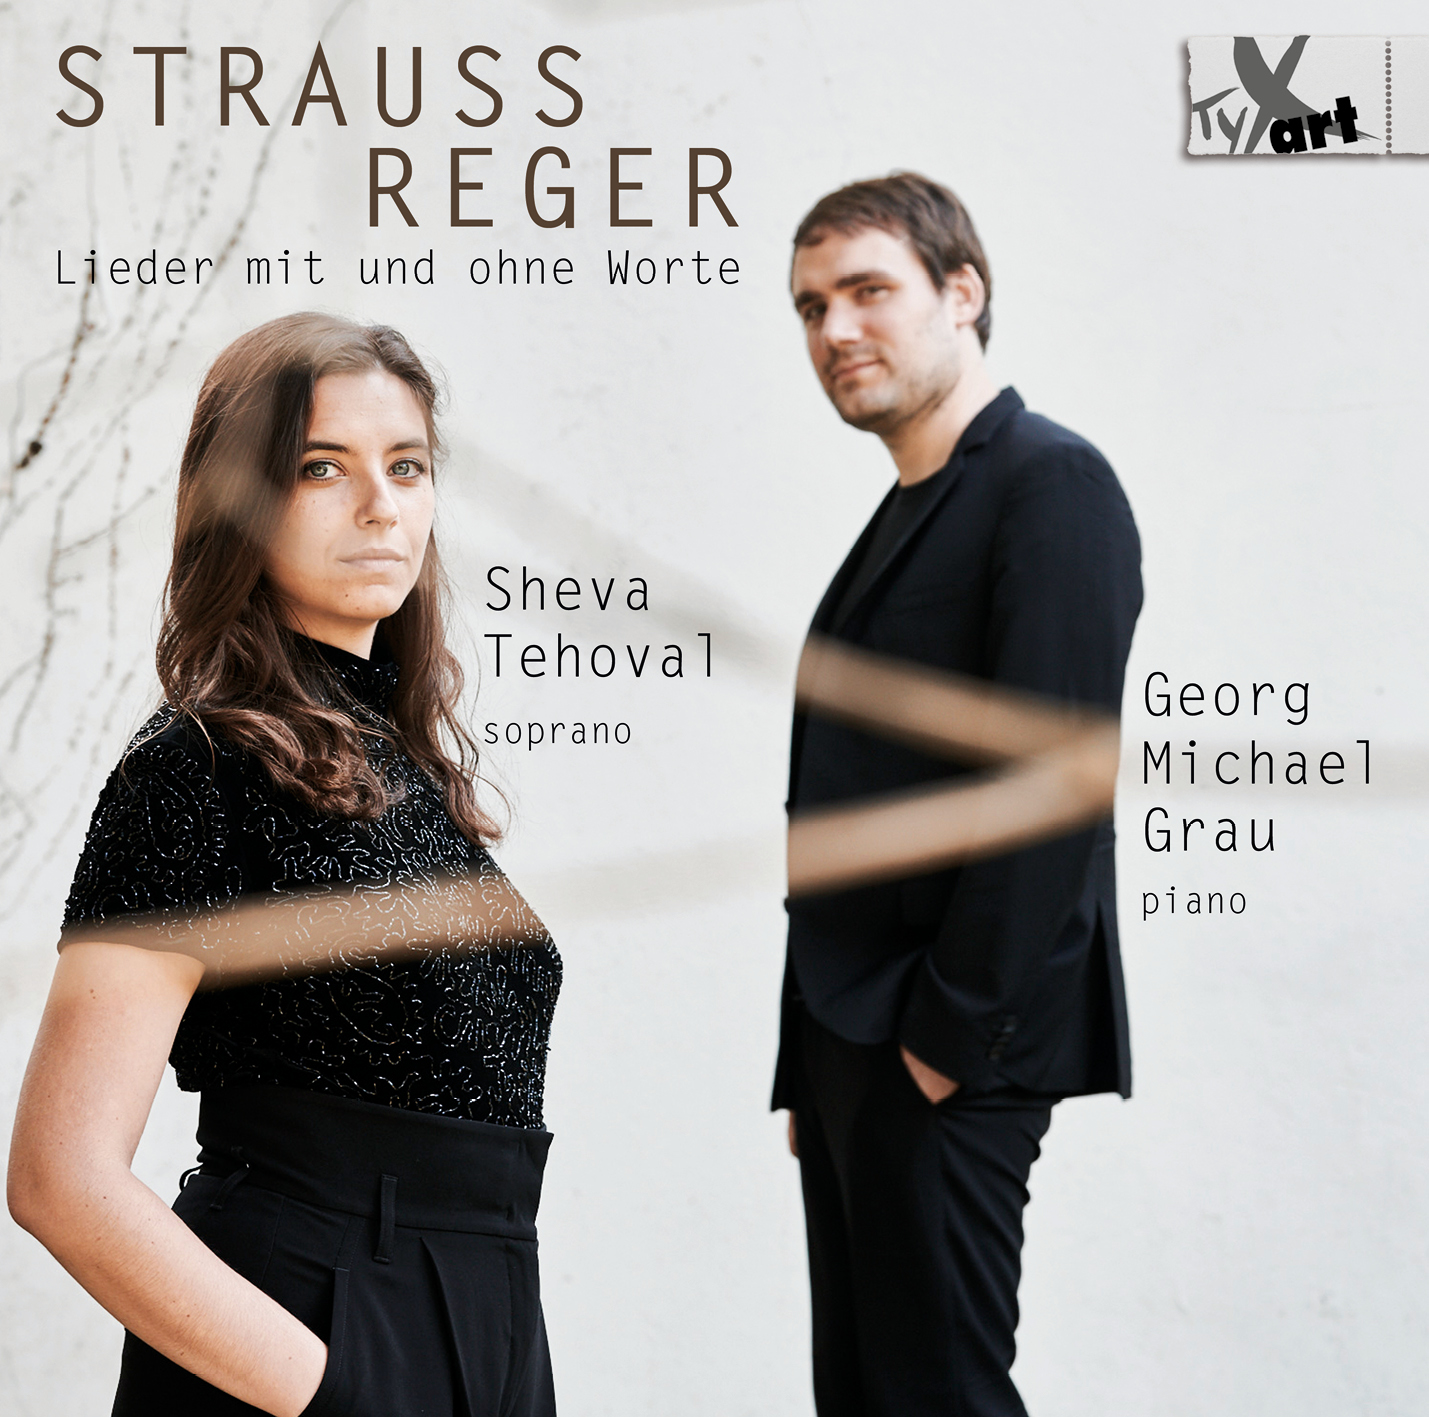 Richard Strauss - Max Reger: Lieder mit und ohne Worte - Sheva Tehoval und Georg Michael Grau